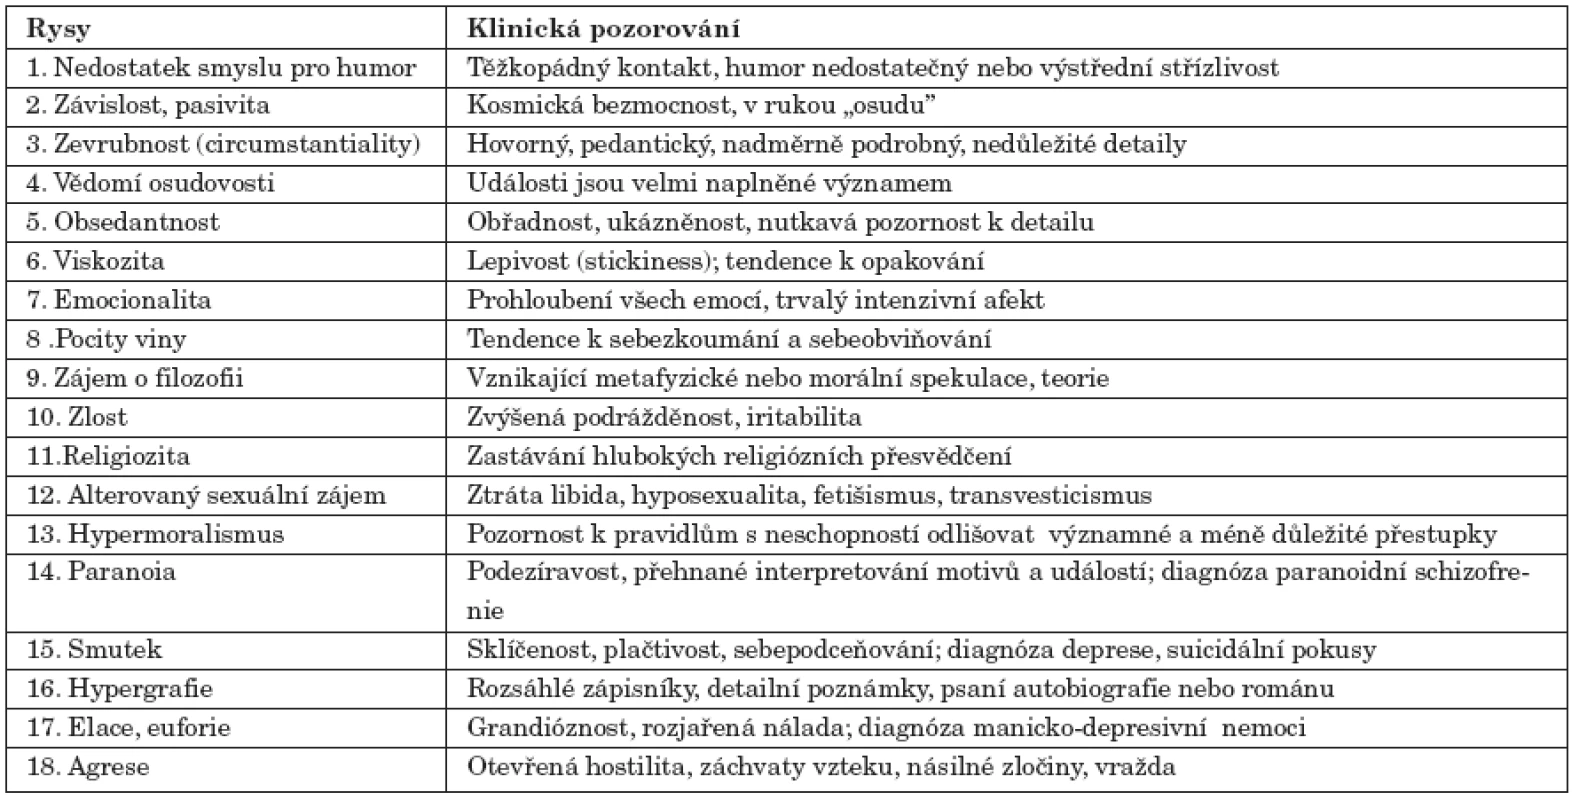 Osmnáct charakteristik, které Bear a Fedio (1977) přisuzují interiktálnímu chování u temporální epilepsie.